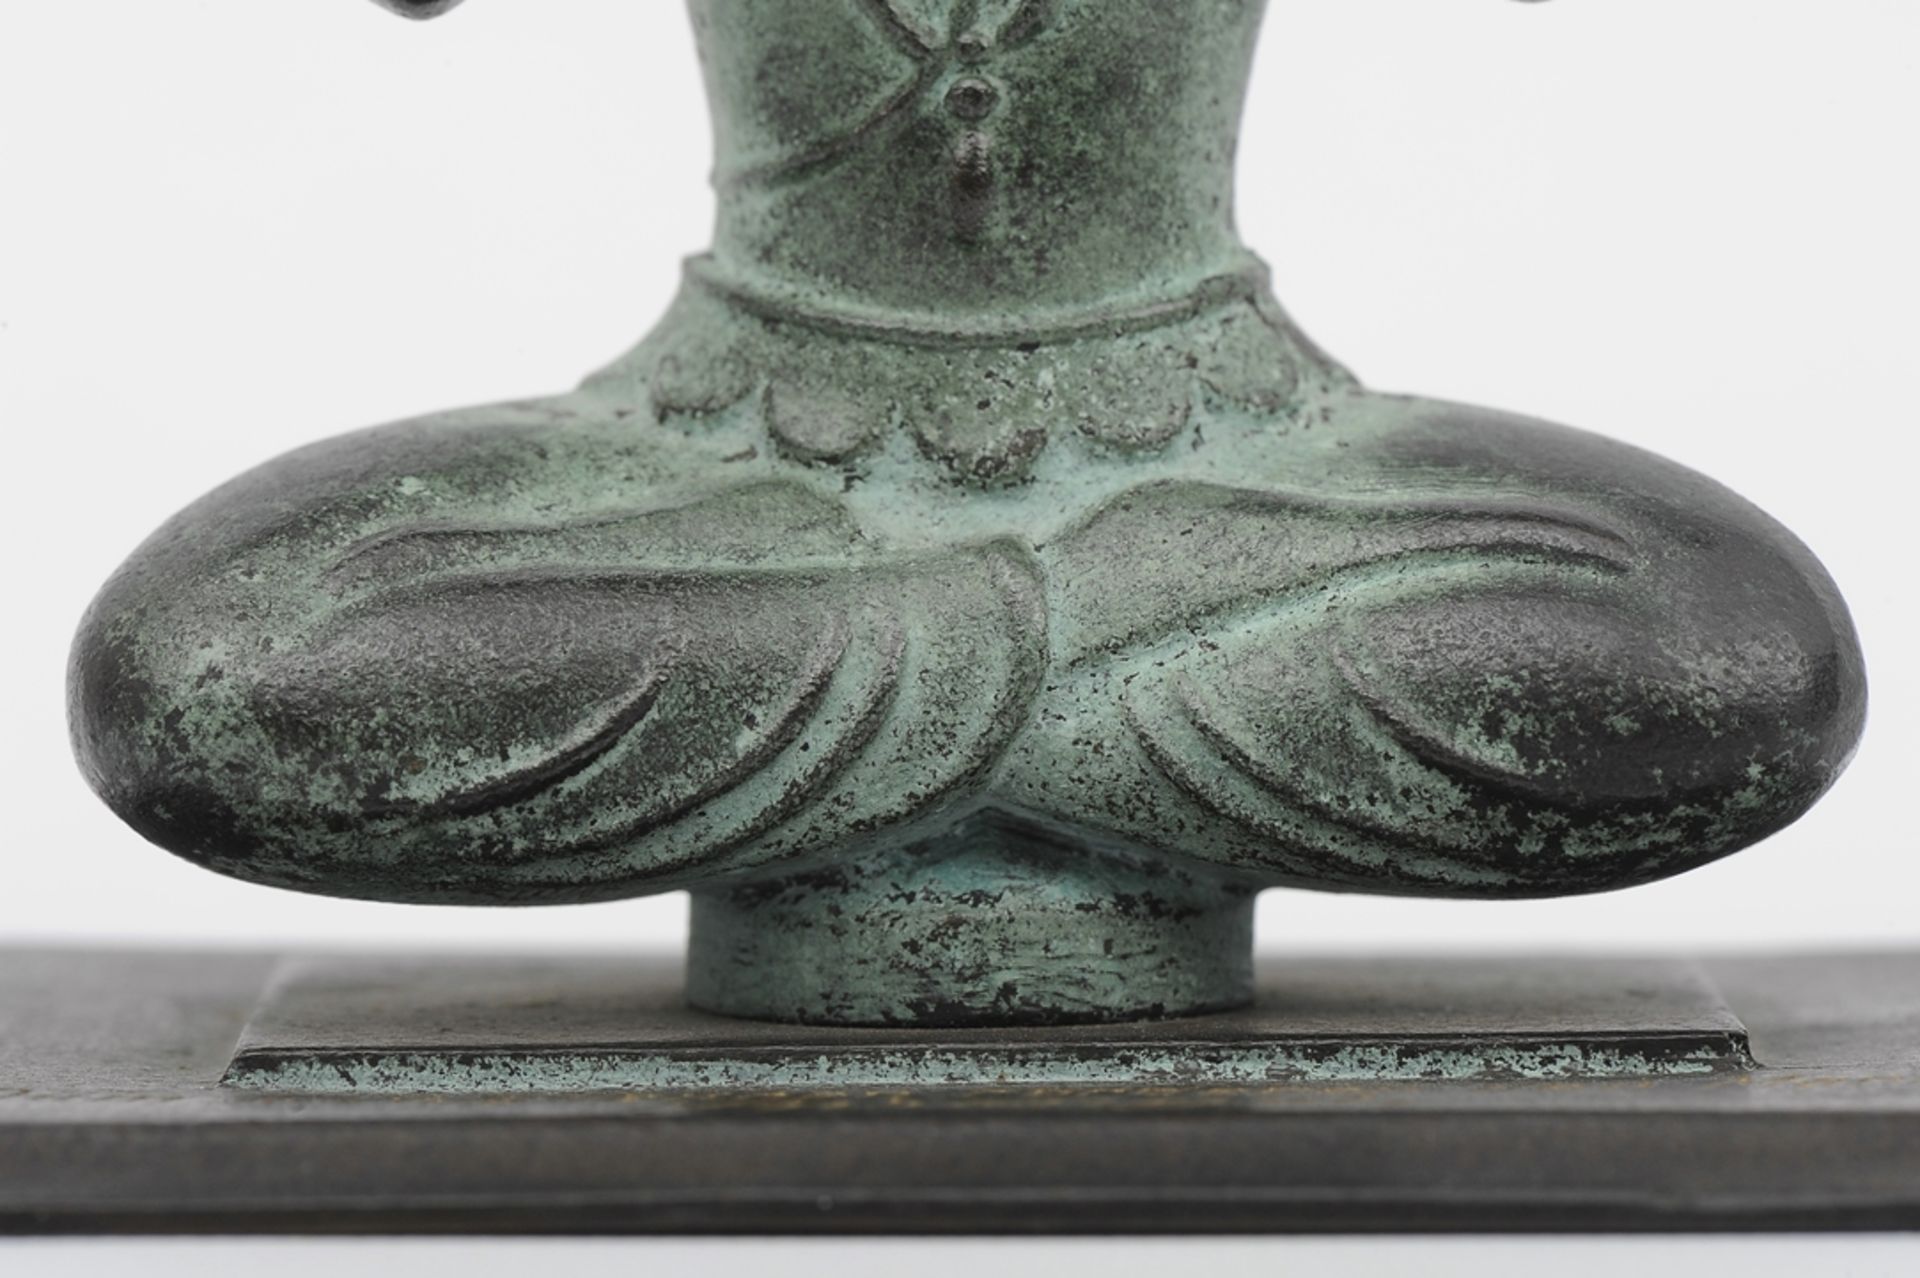 "DEM ERFOLGREICHEN FÖRDERER DER MARKE SPRENGEL" - grünlich, braunschwarz patinierte Buddhafigur auf - Image 11 of 11